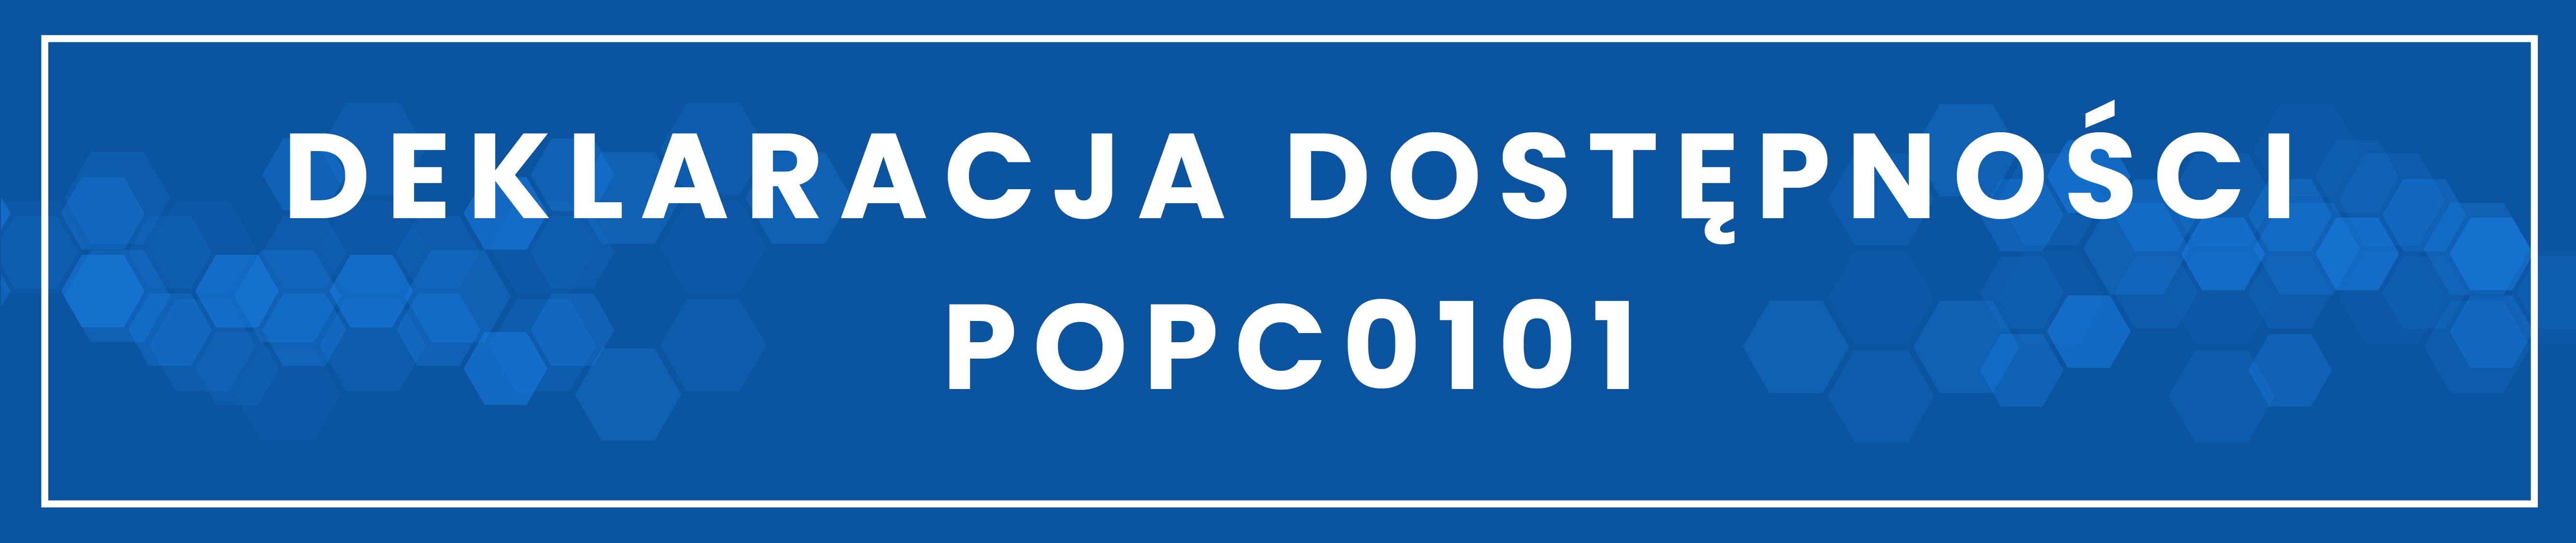 Deklaracja dostępności POPC0101